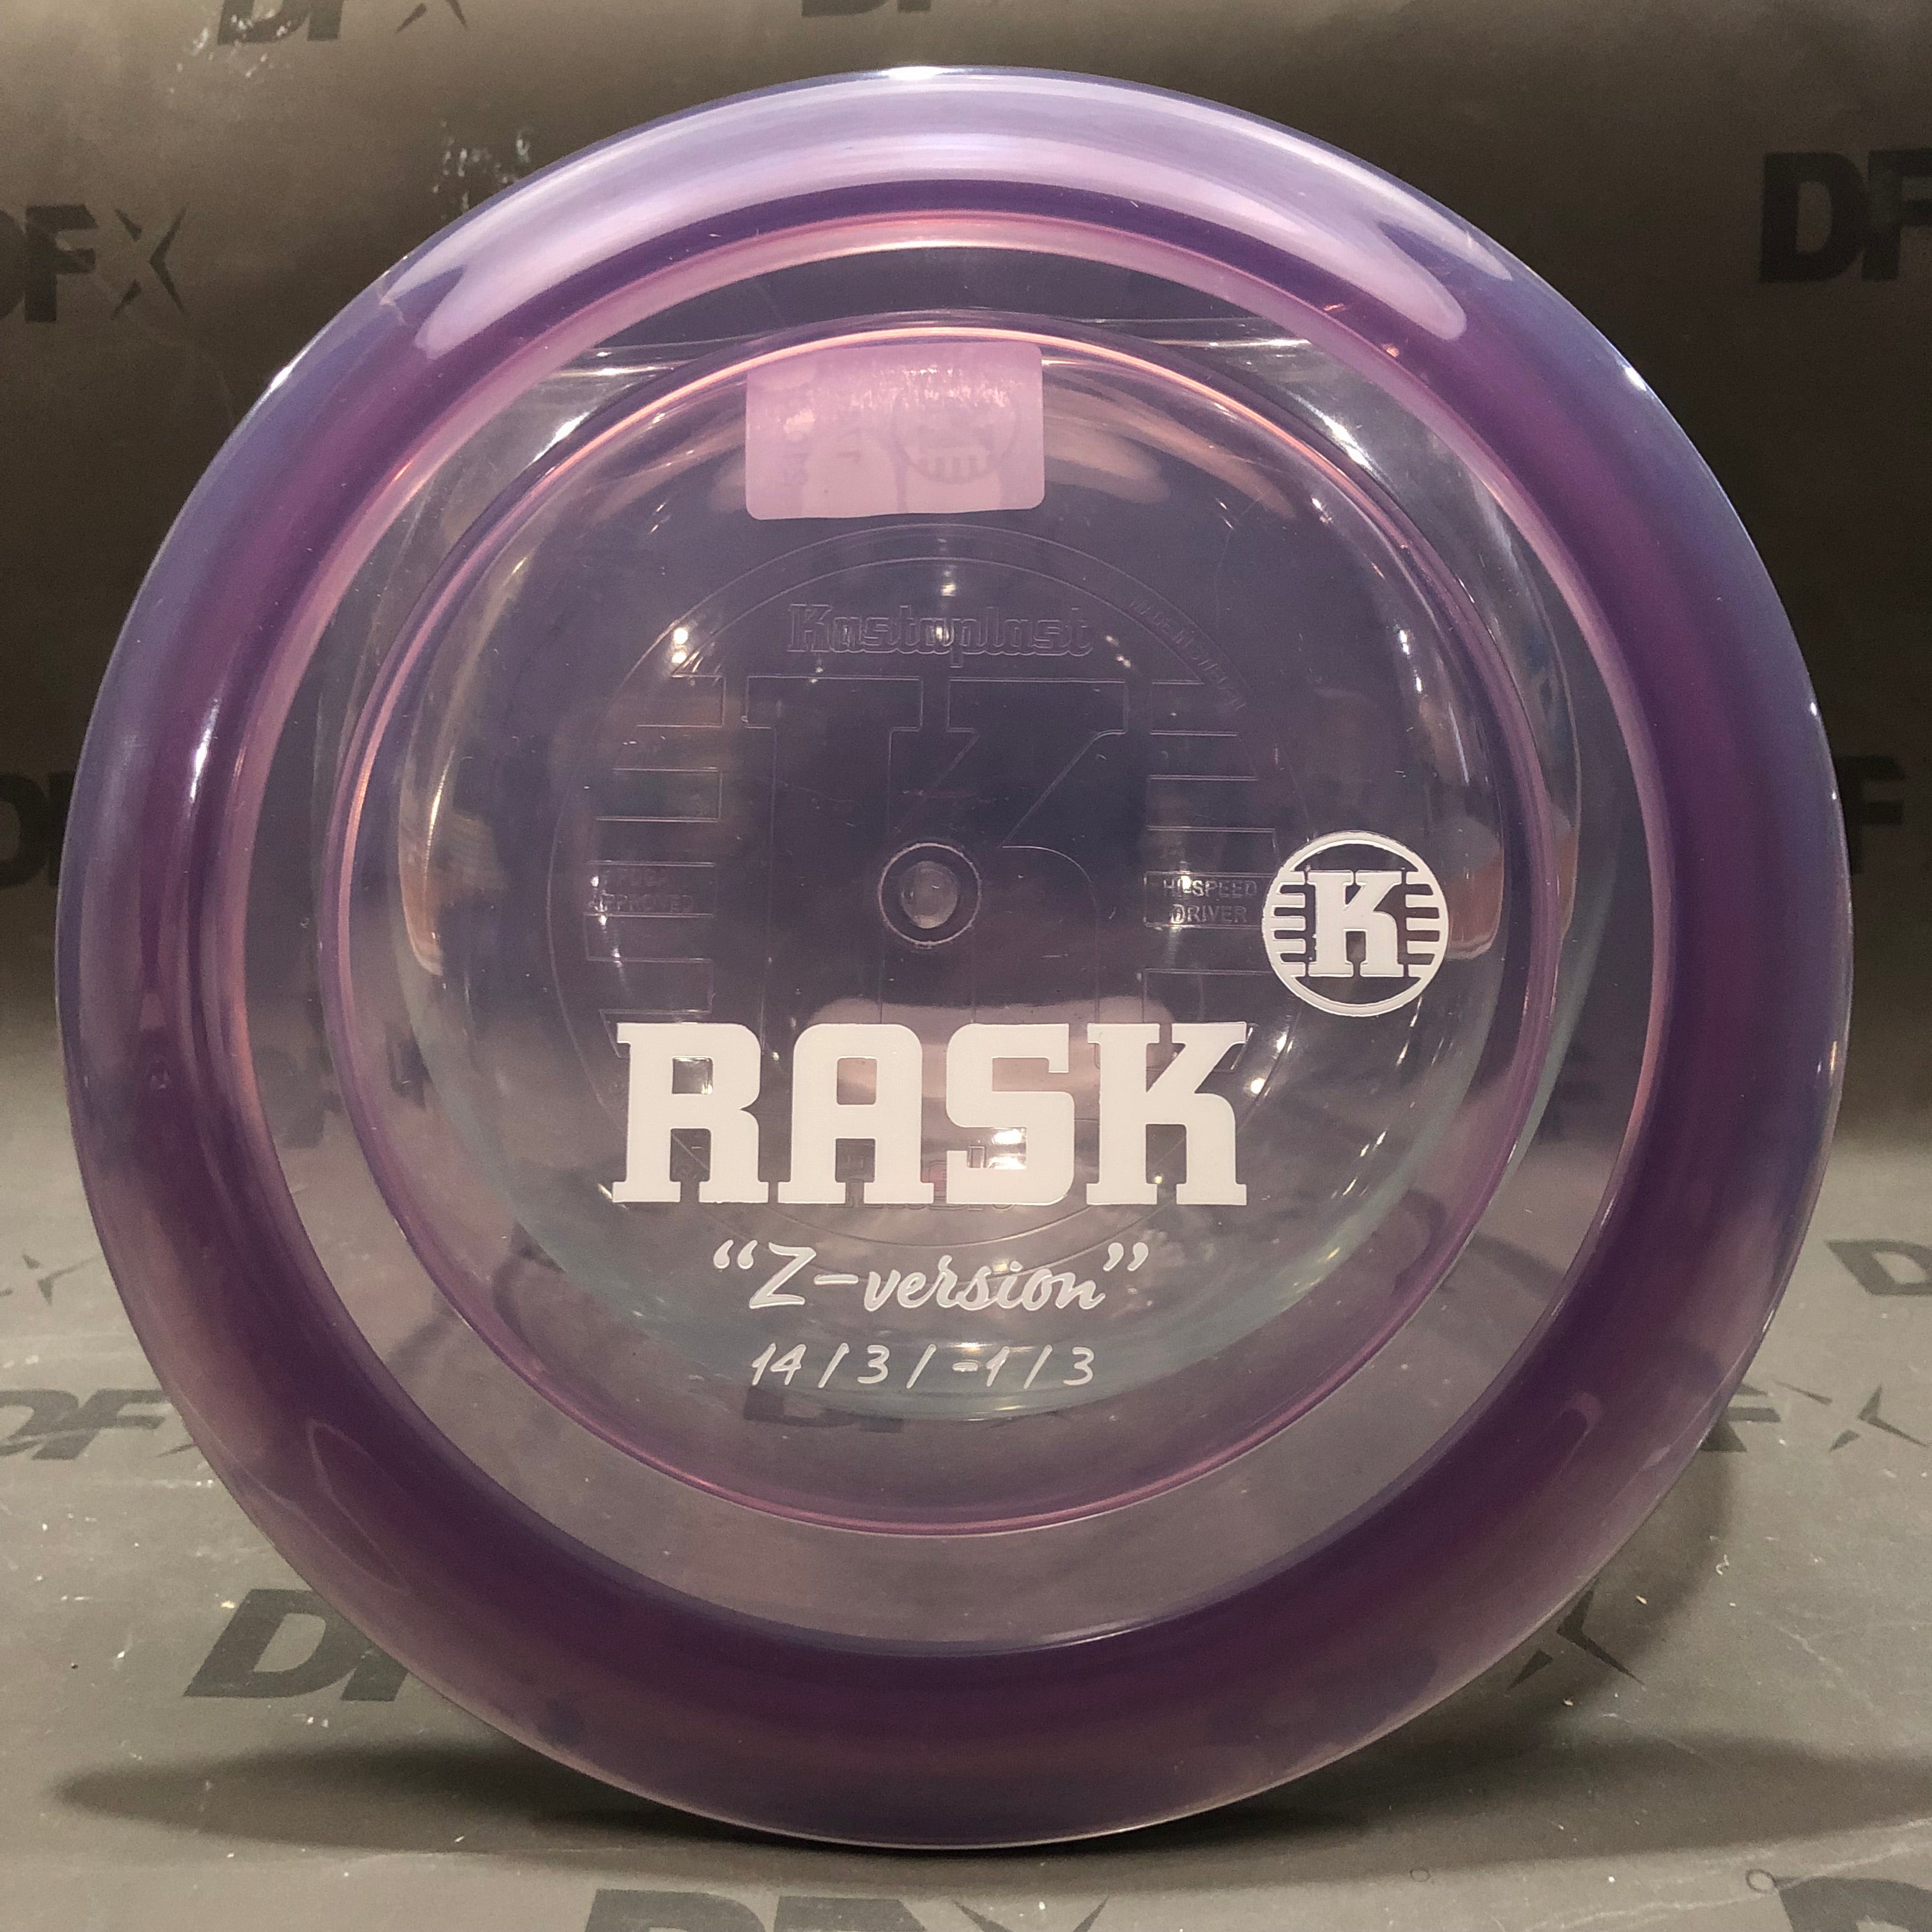 Kastaplast Rask K1 - "Z Version"